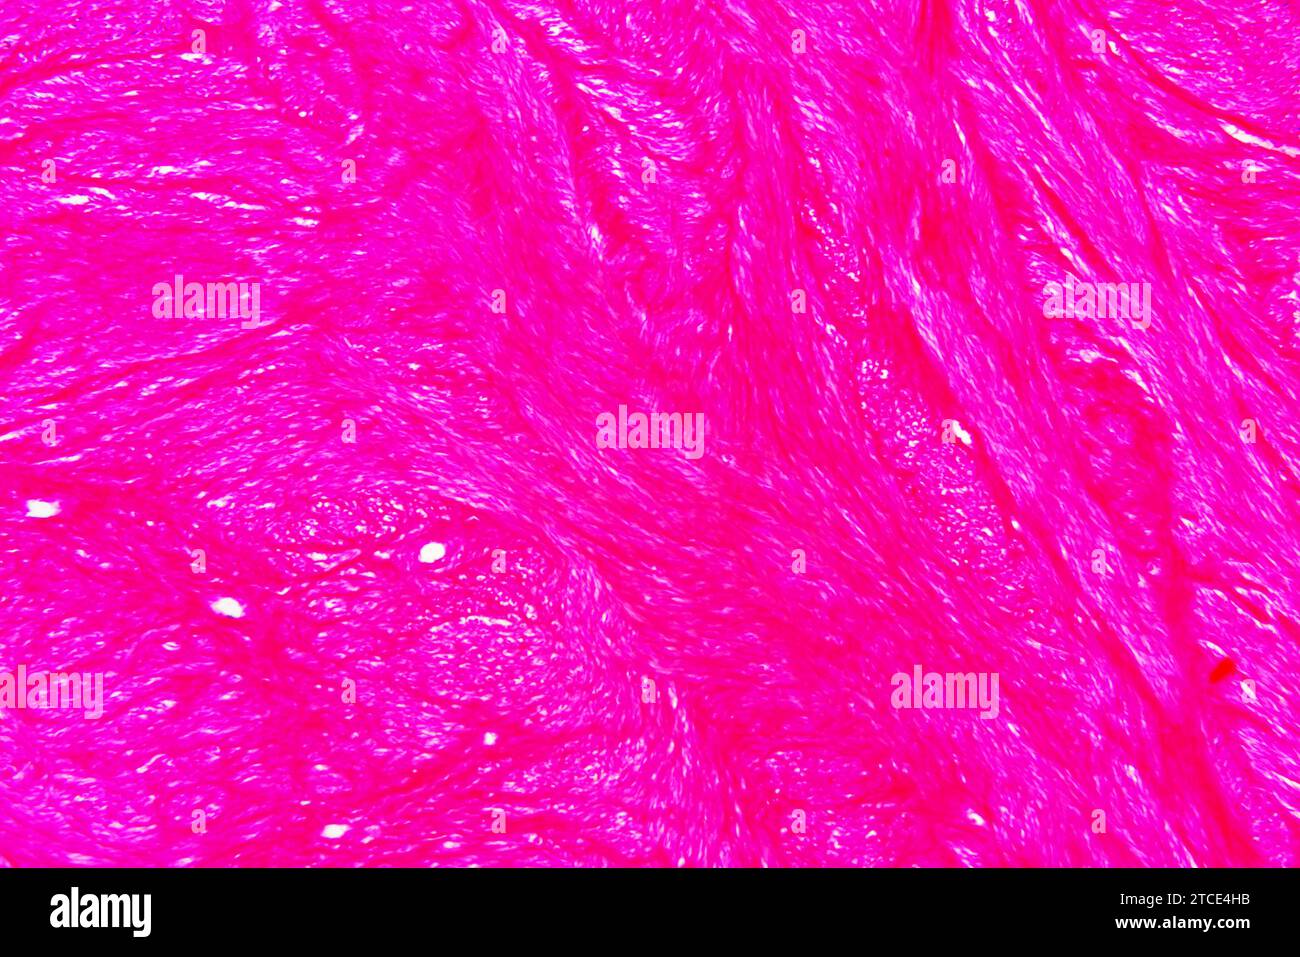 Fibroide uterino umano (tumore benigno). Microscopio ottico X40. Foto Stock